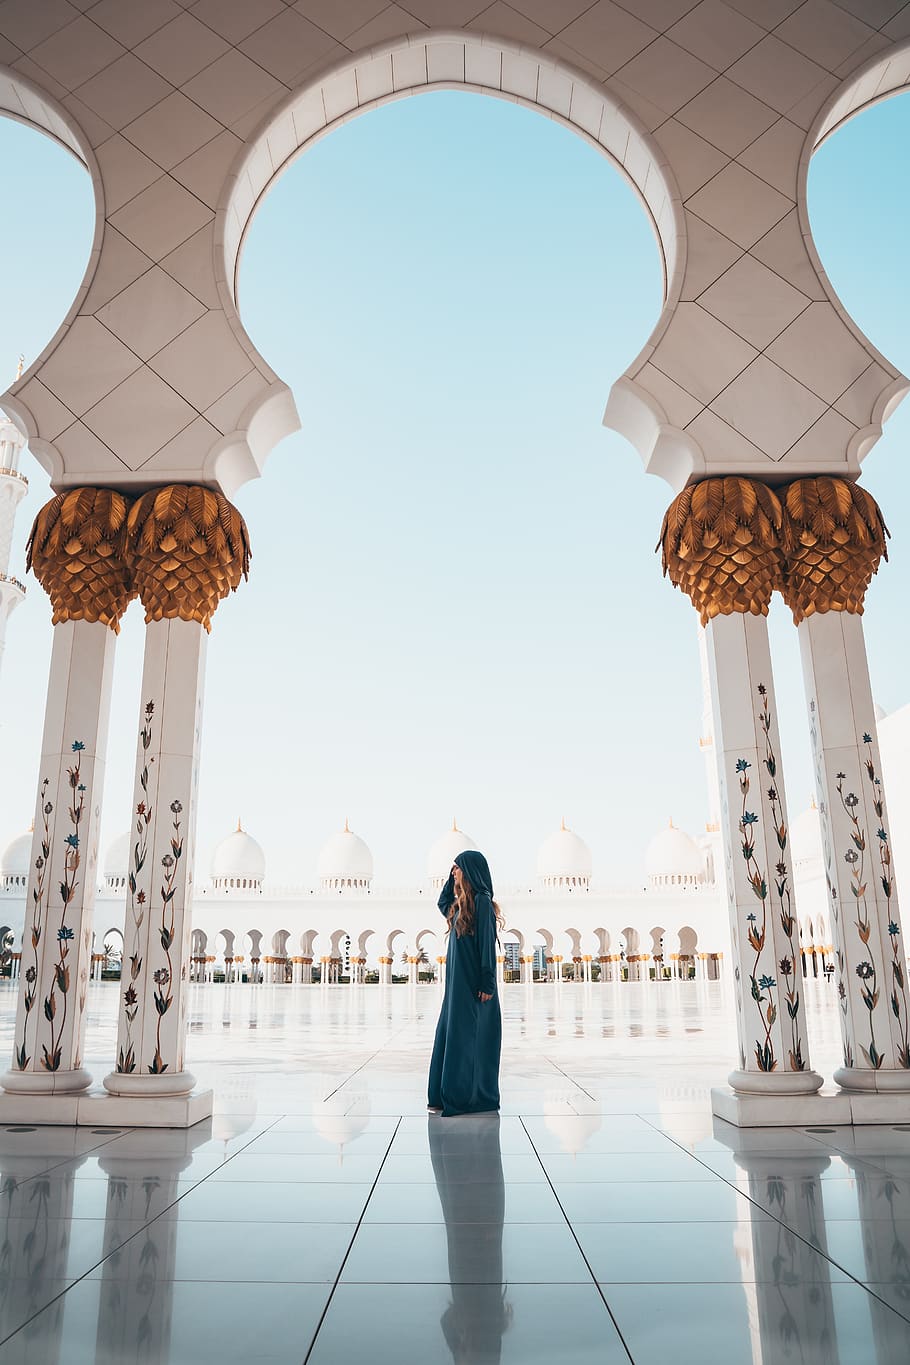 mulher, mesquita, arquitetura, edifício, religião, muçulmano, sol, verão, mármore, cúpula